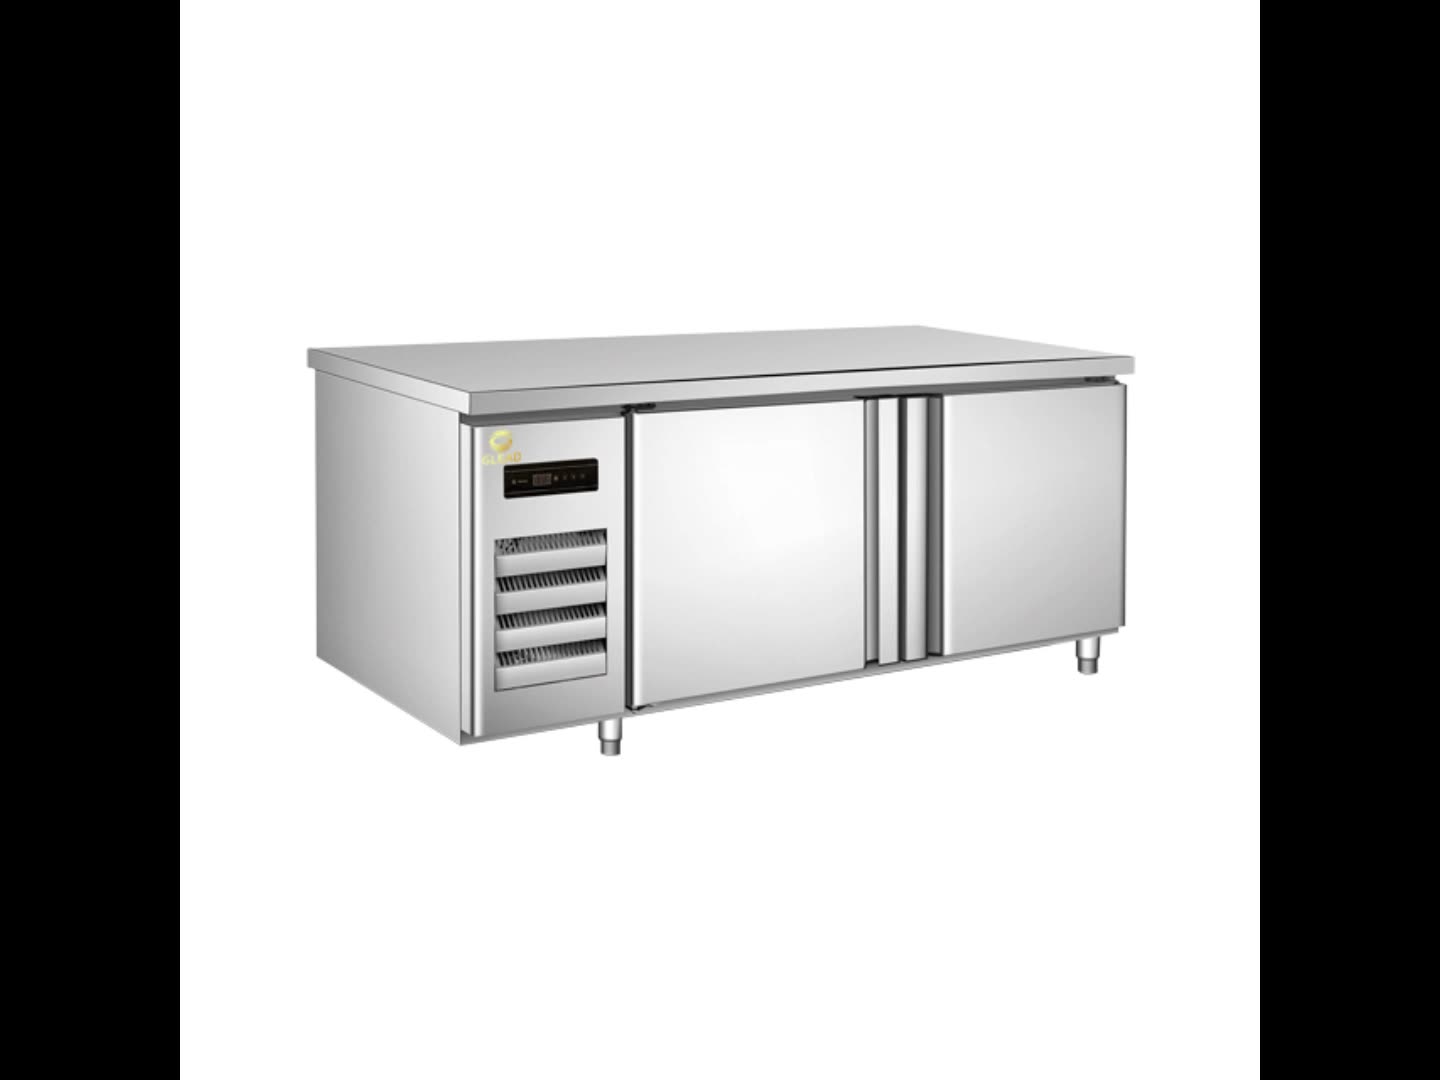 Edelstahlluftkühlküche Kühlschrank für das Restaurant zu Gebrauch11